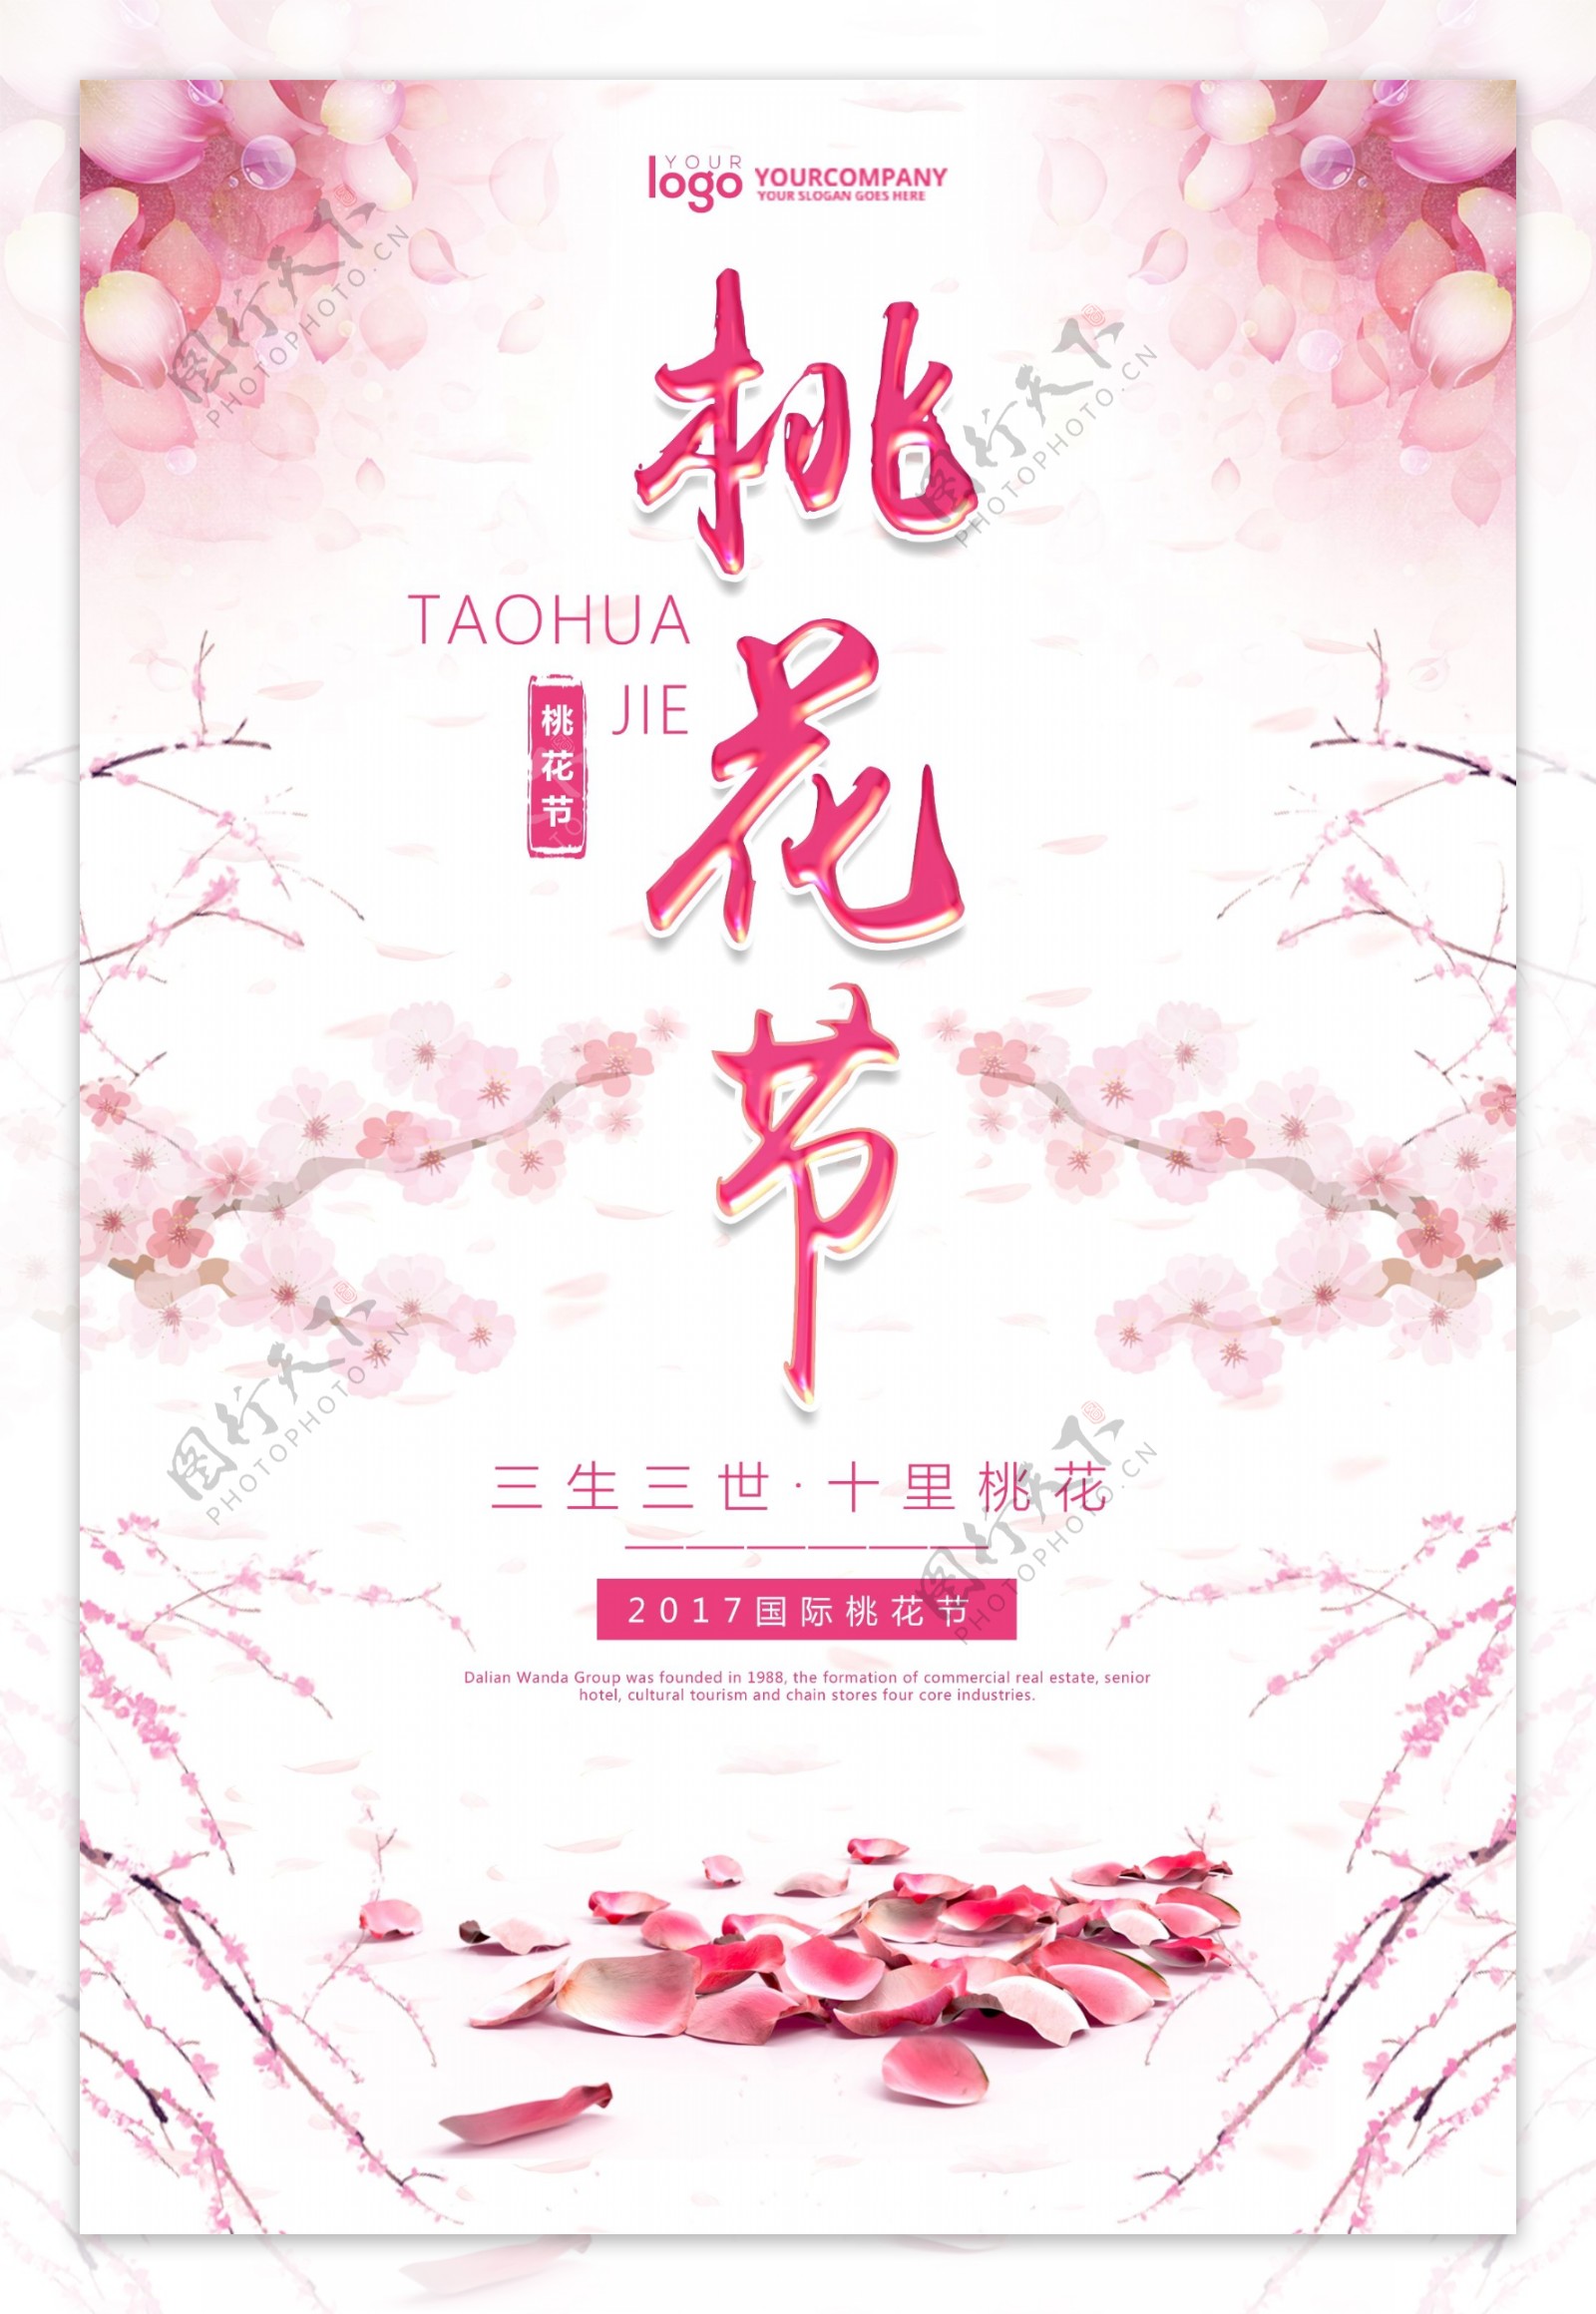 桃花节节日系列海报设计